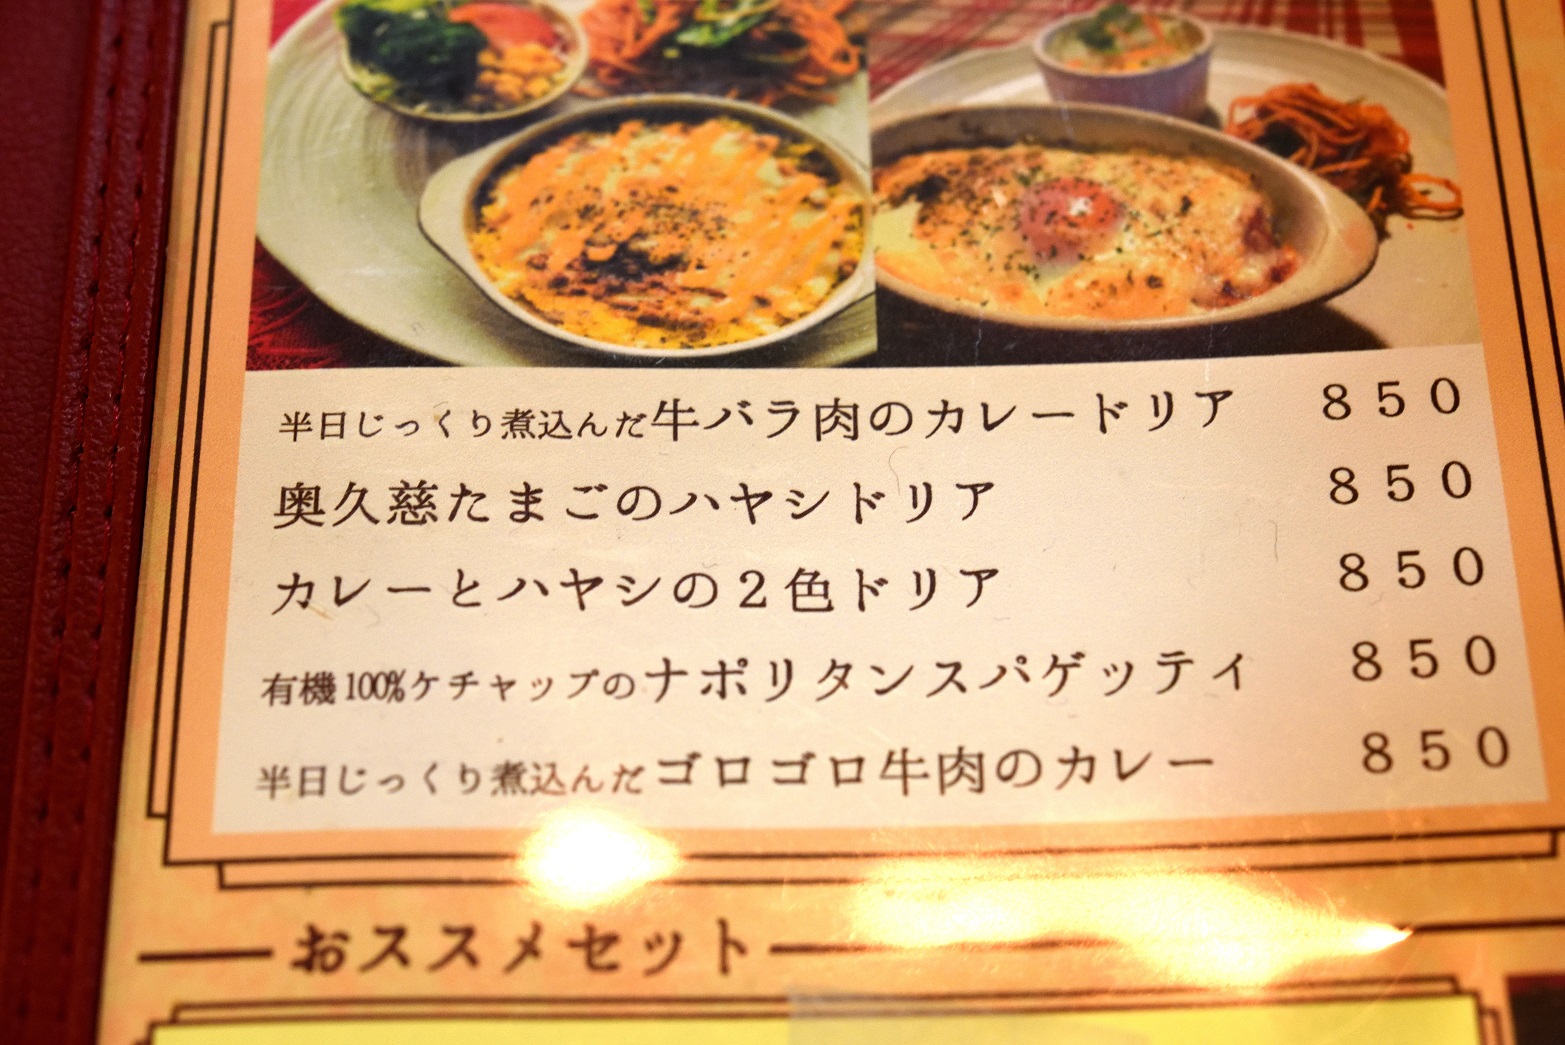 花きゃべつ 水戸で長年愛され続けている洋食店 納豆ハヤシオムライスはぜひともお試しあれ 茨城県水戸市 ぼっちメシ研究所